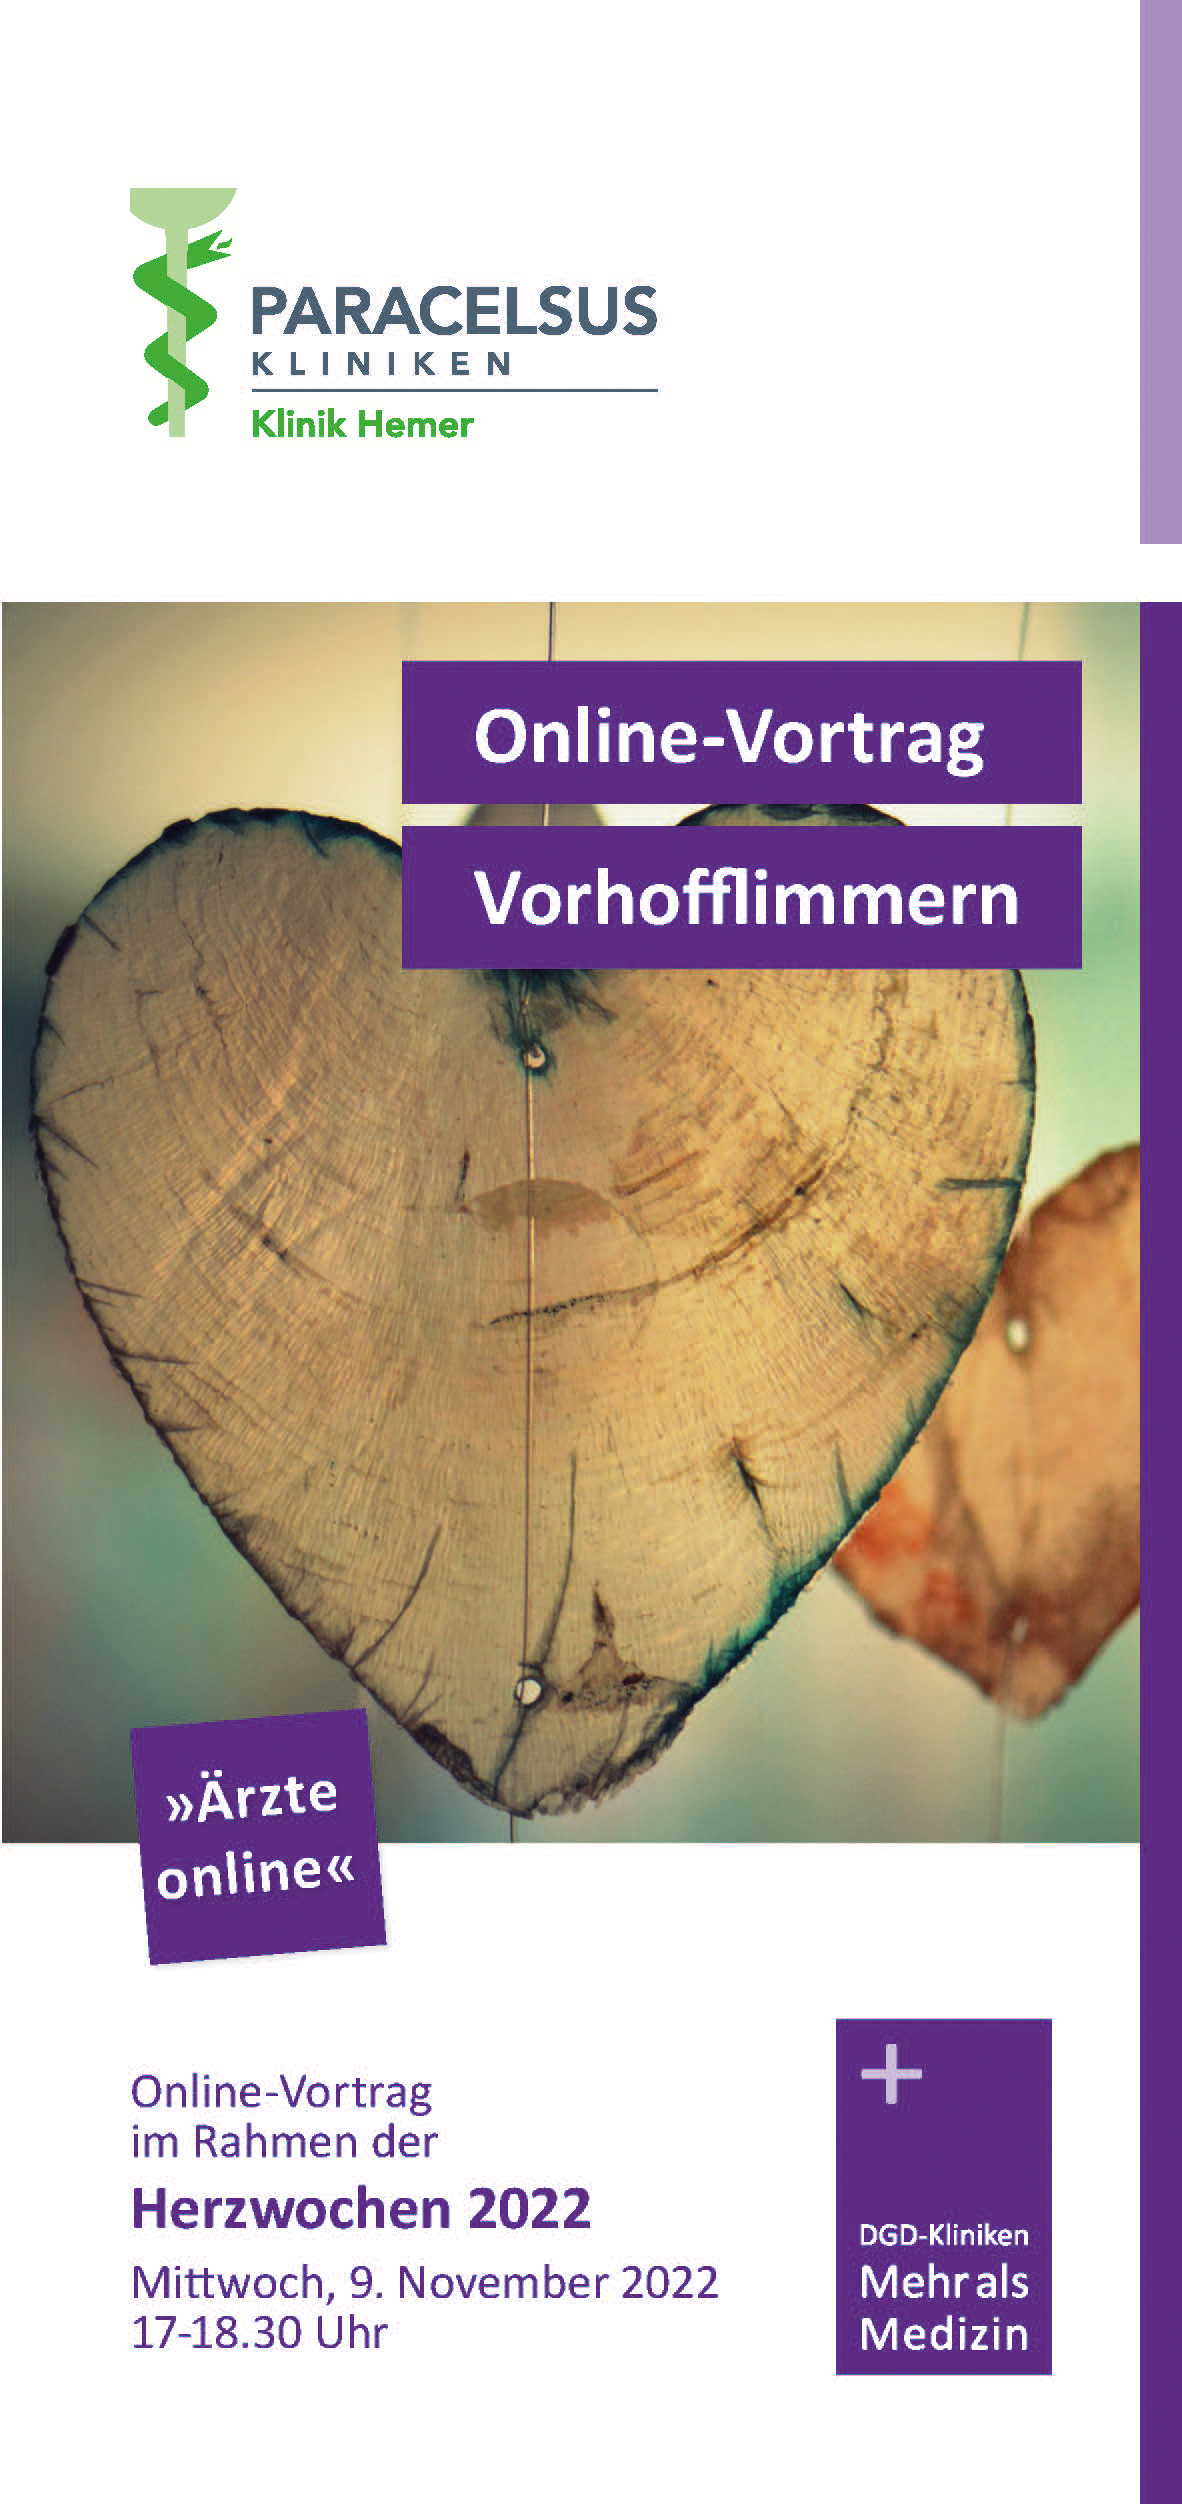 Online-Vortrag "Vorhofflimmern" im Rahmen der Herzwochen 2022